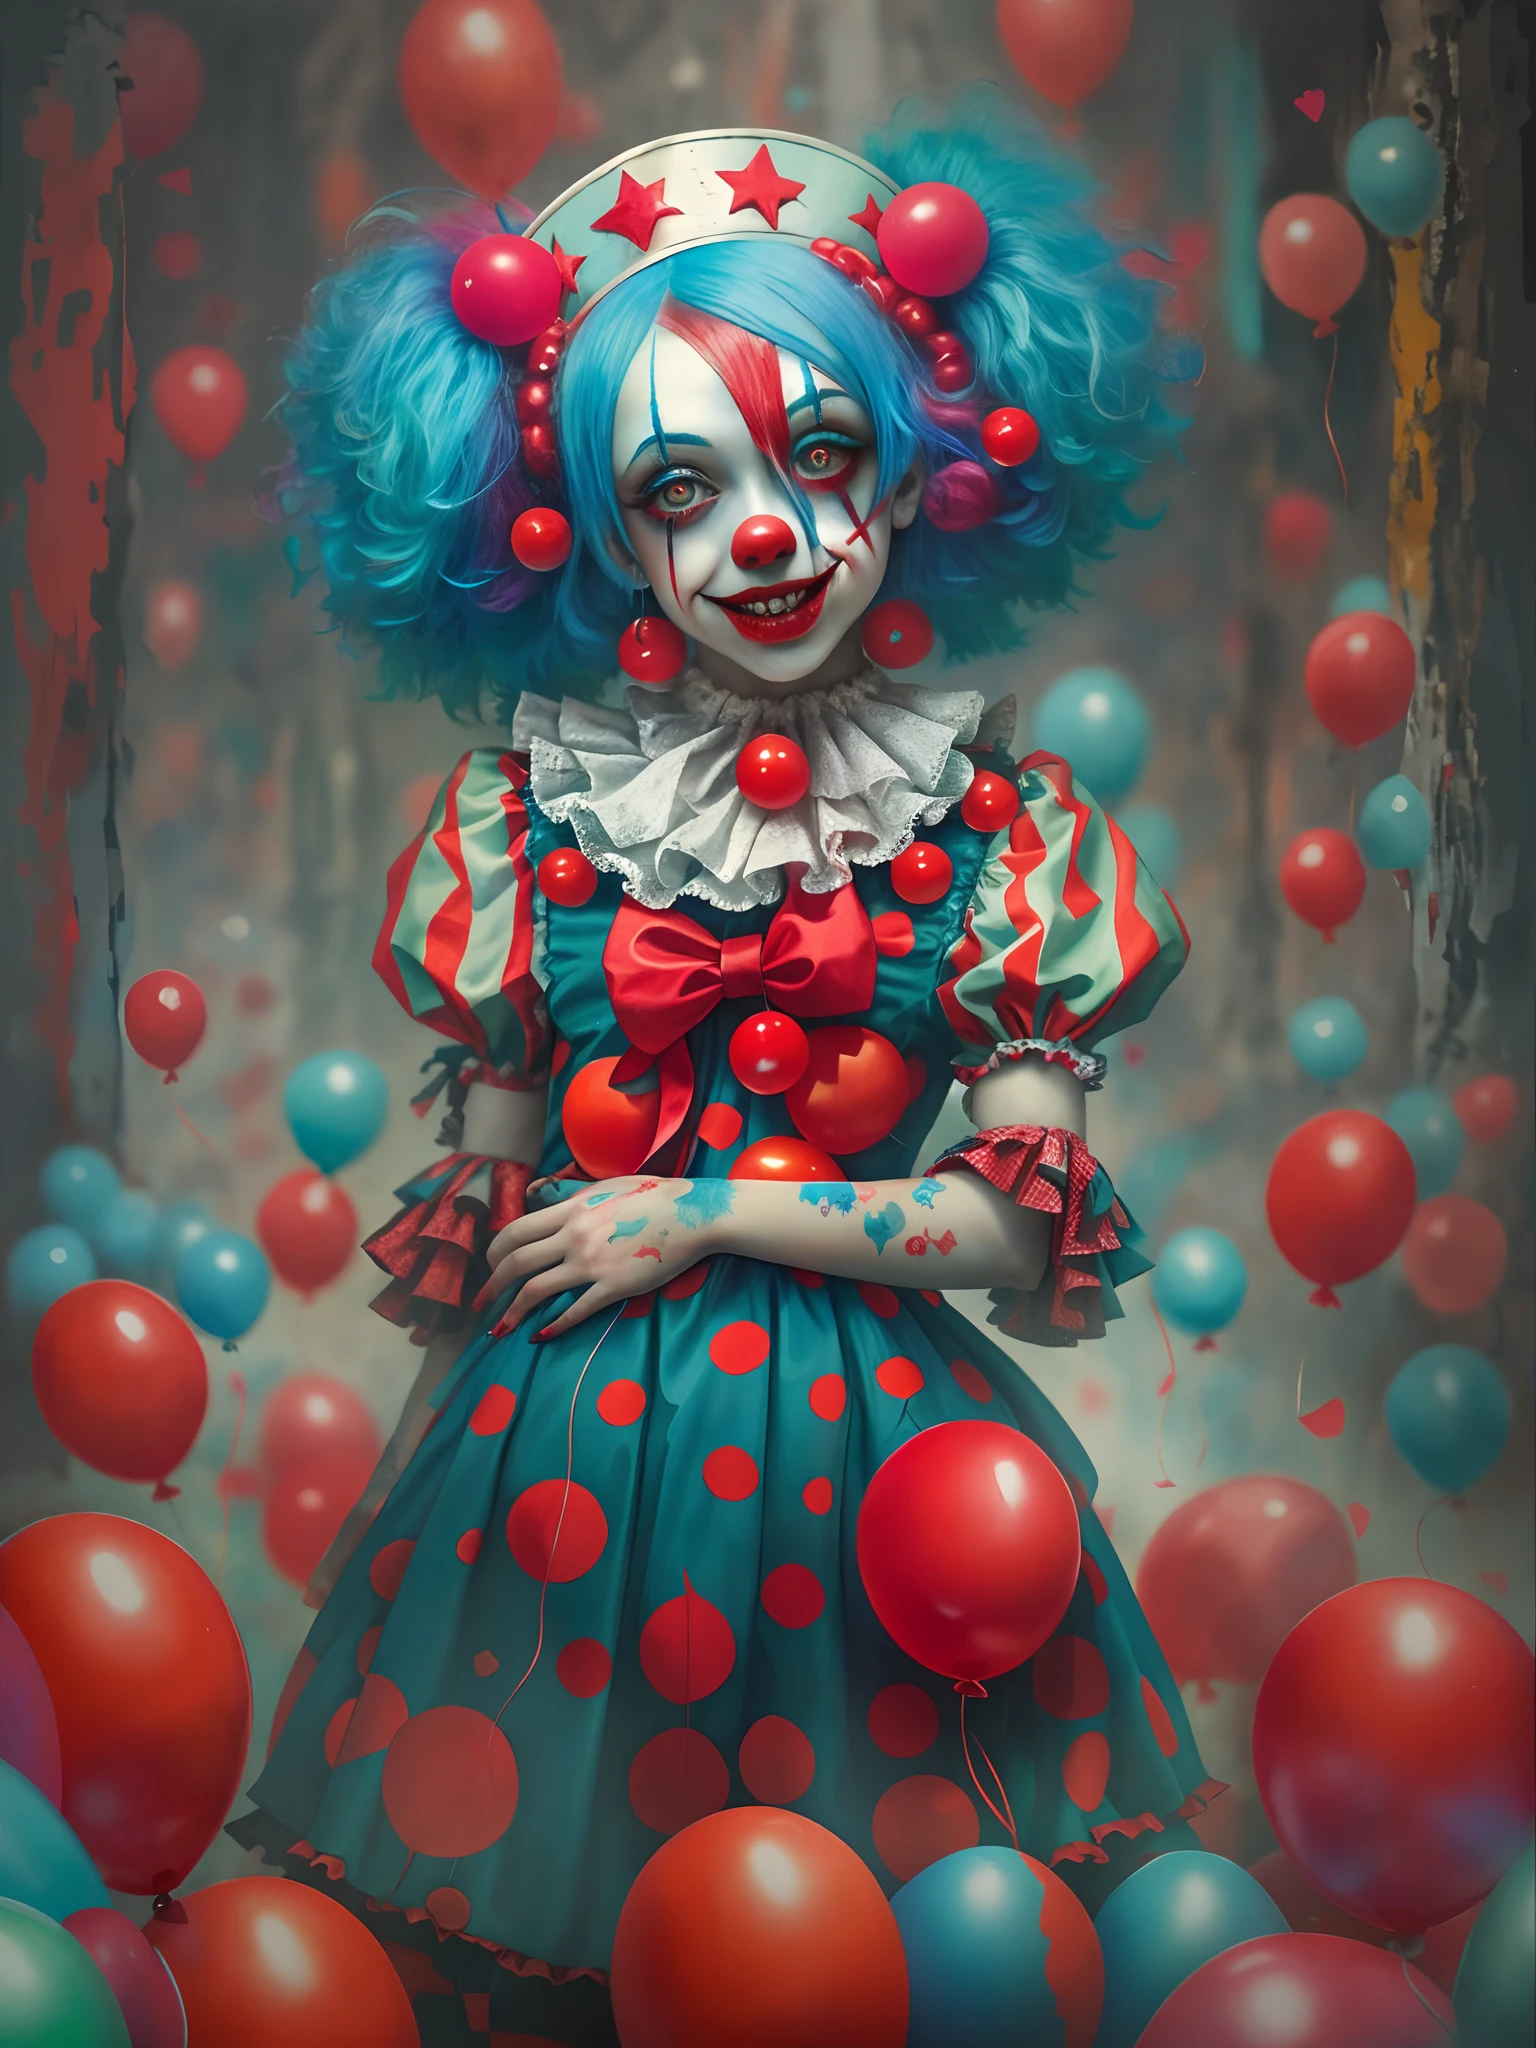 Le clown aux cheveux bleus et au maquillage de clown rouge est entouré de ballons rouges, clowncore mignon, Fille clown effrayante, Clown effrayant, Fille clown, peinture détaillée 4 k, portrait clown de la mort, Gagnant du concours Artstation, fille de clown gothique, DeviantArt Artstation CGScosiety, gagnant du concours cgsociety!!, gagnant du concours cgsociety!!!, y 2 k clowncore mignon